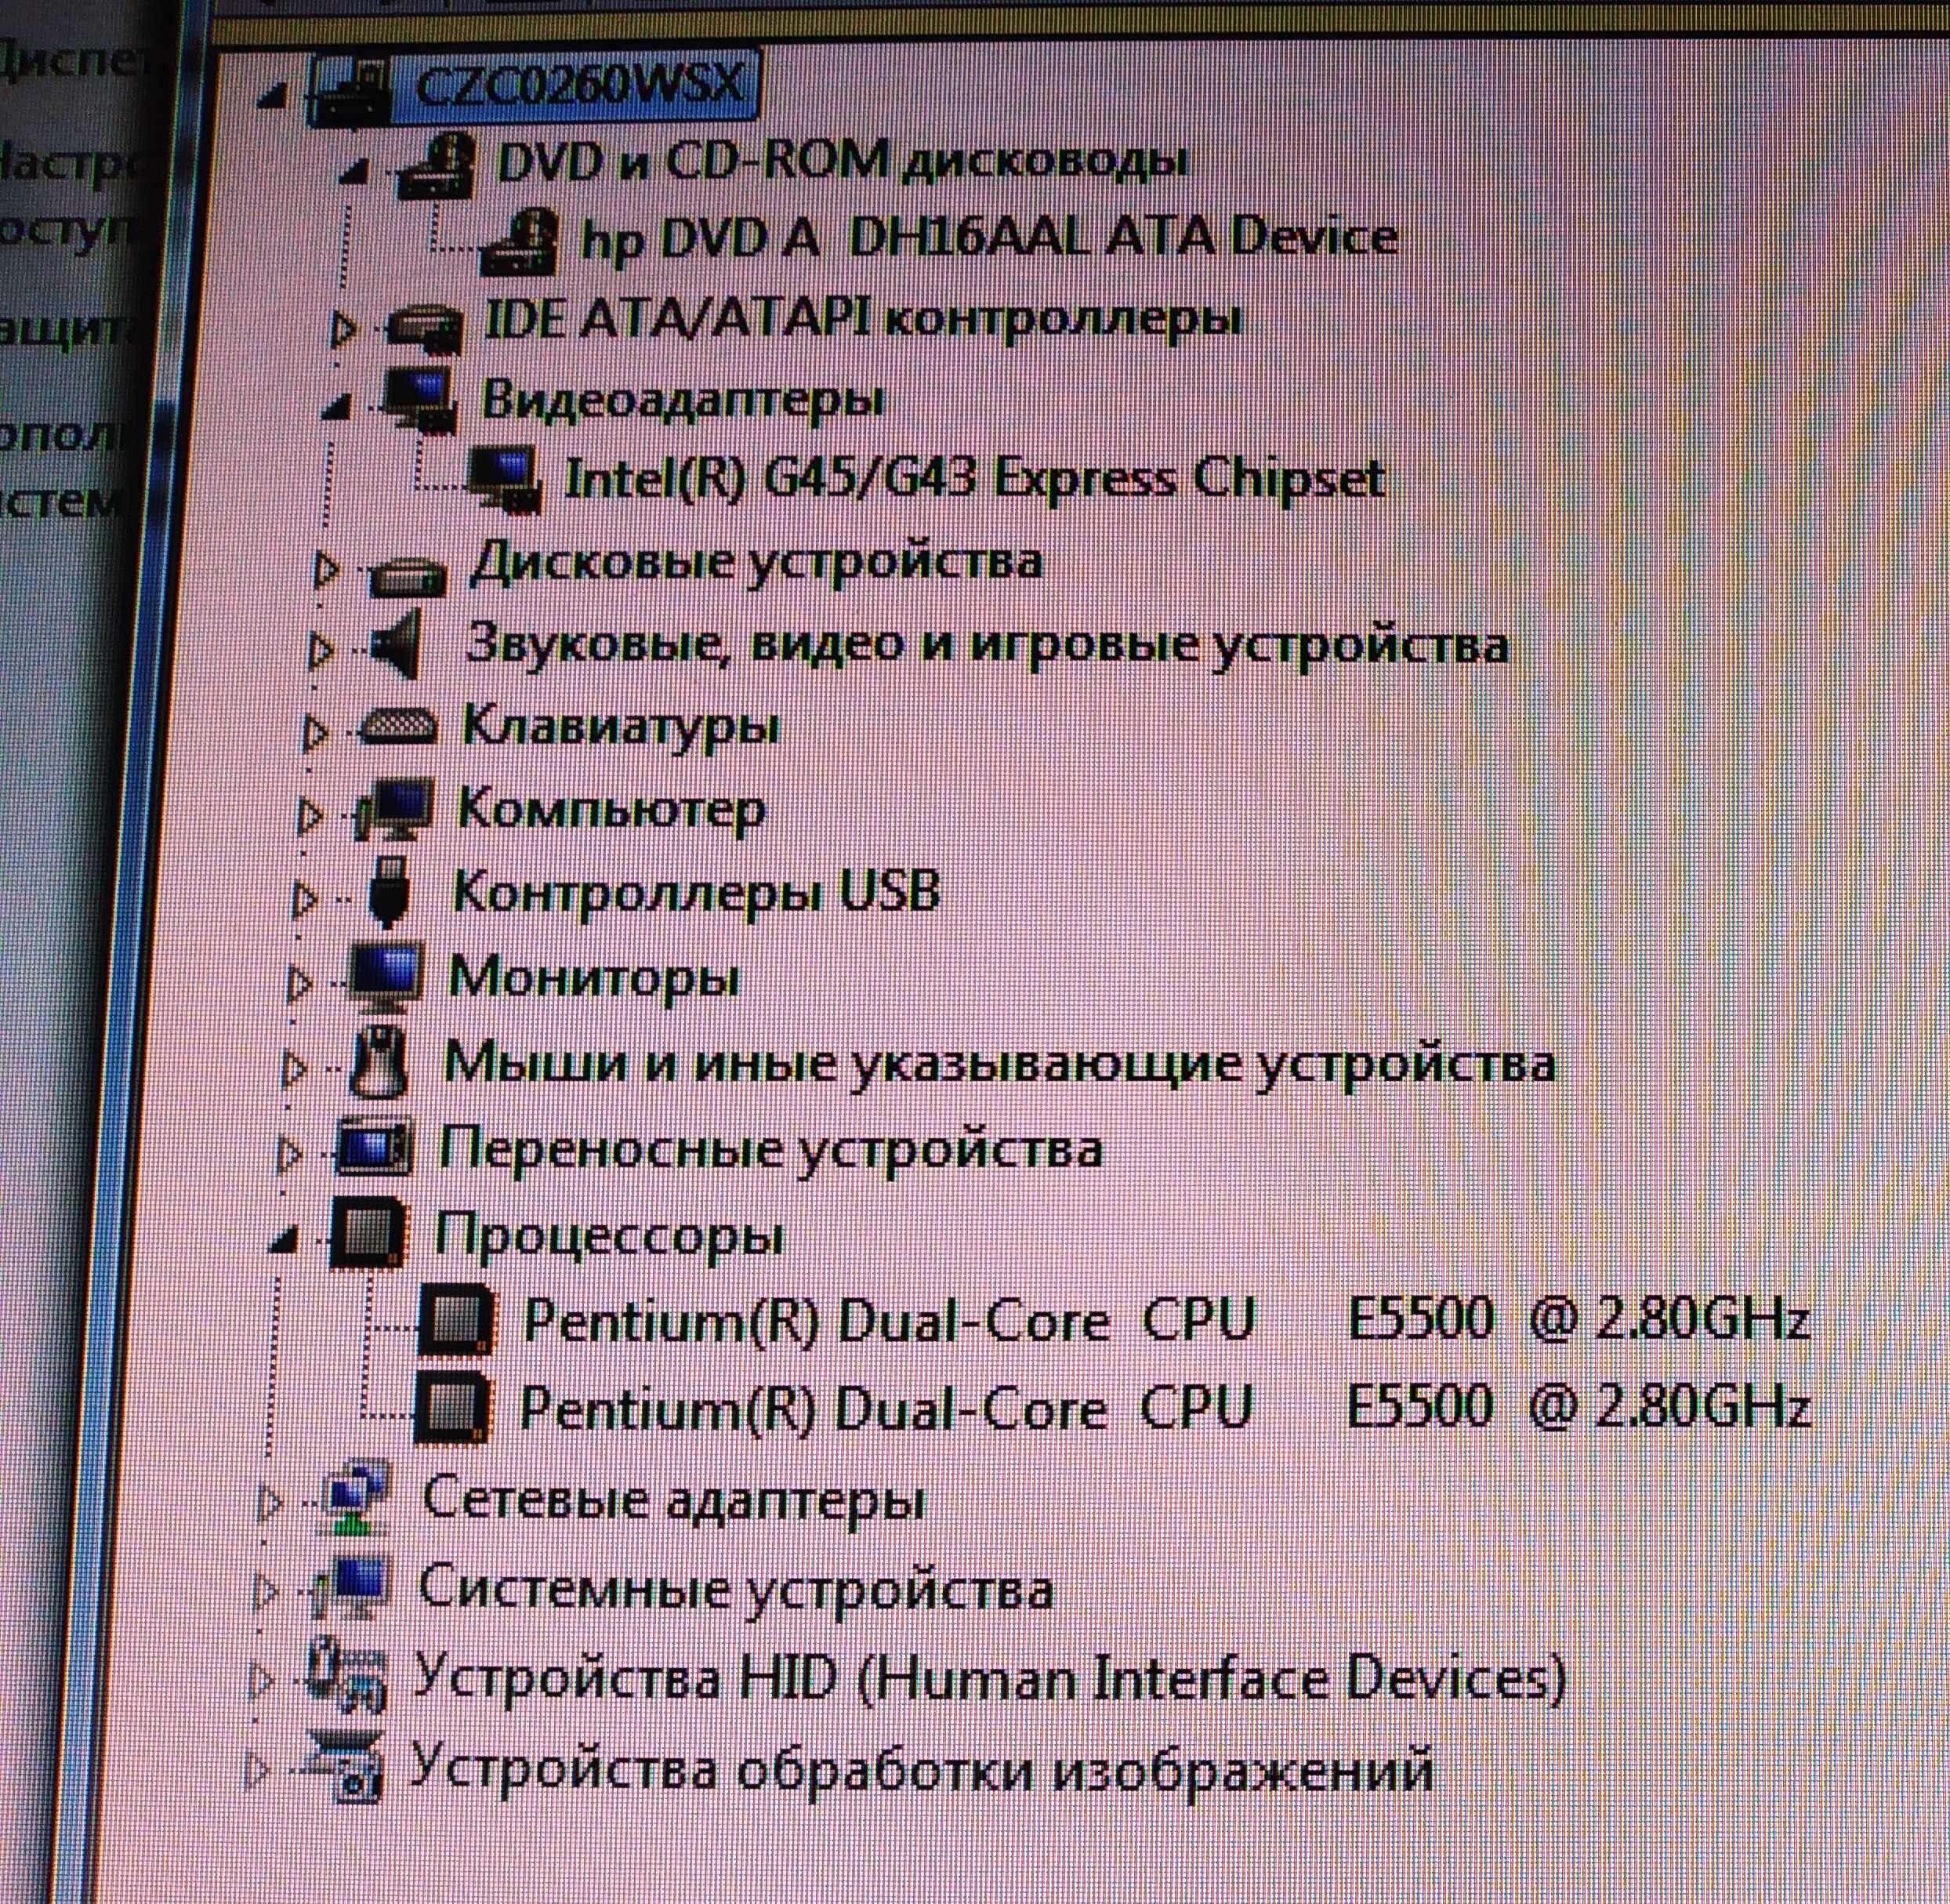 Продам компьютер, системный блок HP Pro 3010 MT, монитор 19 дюймов